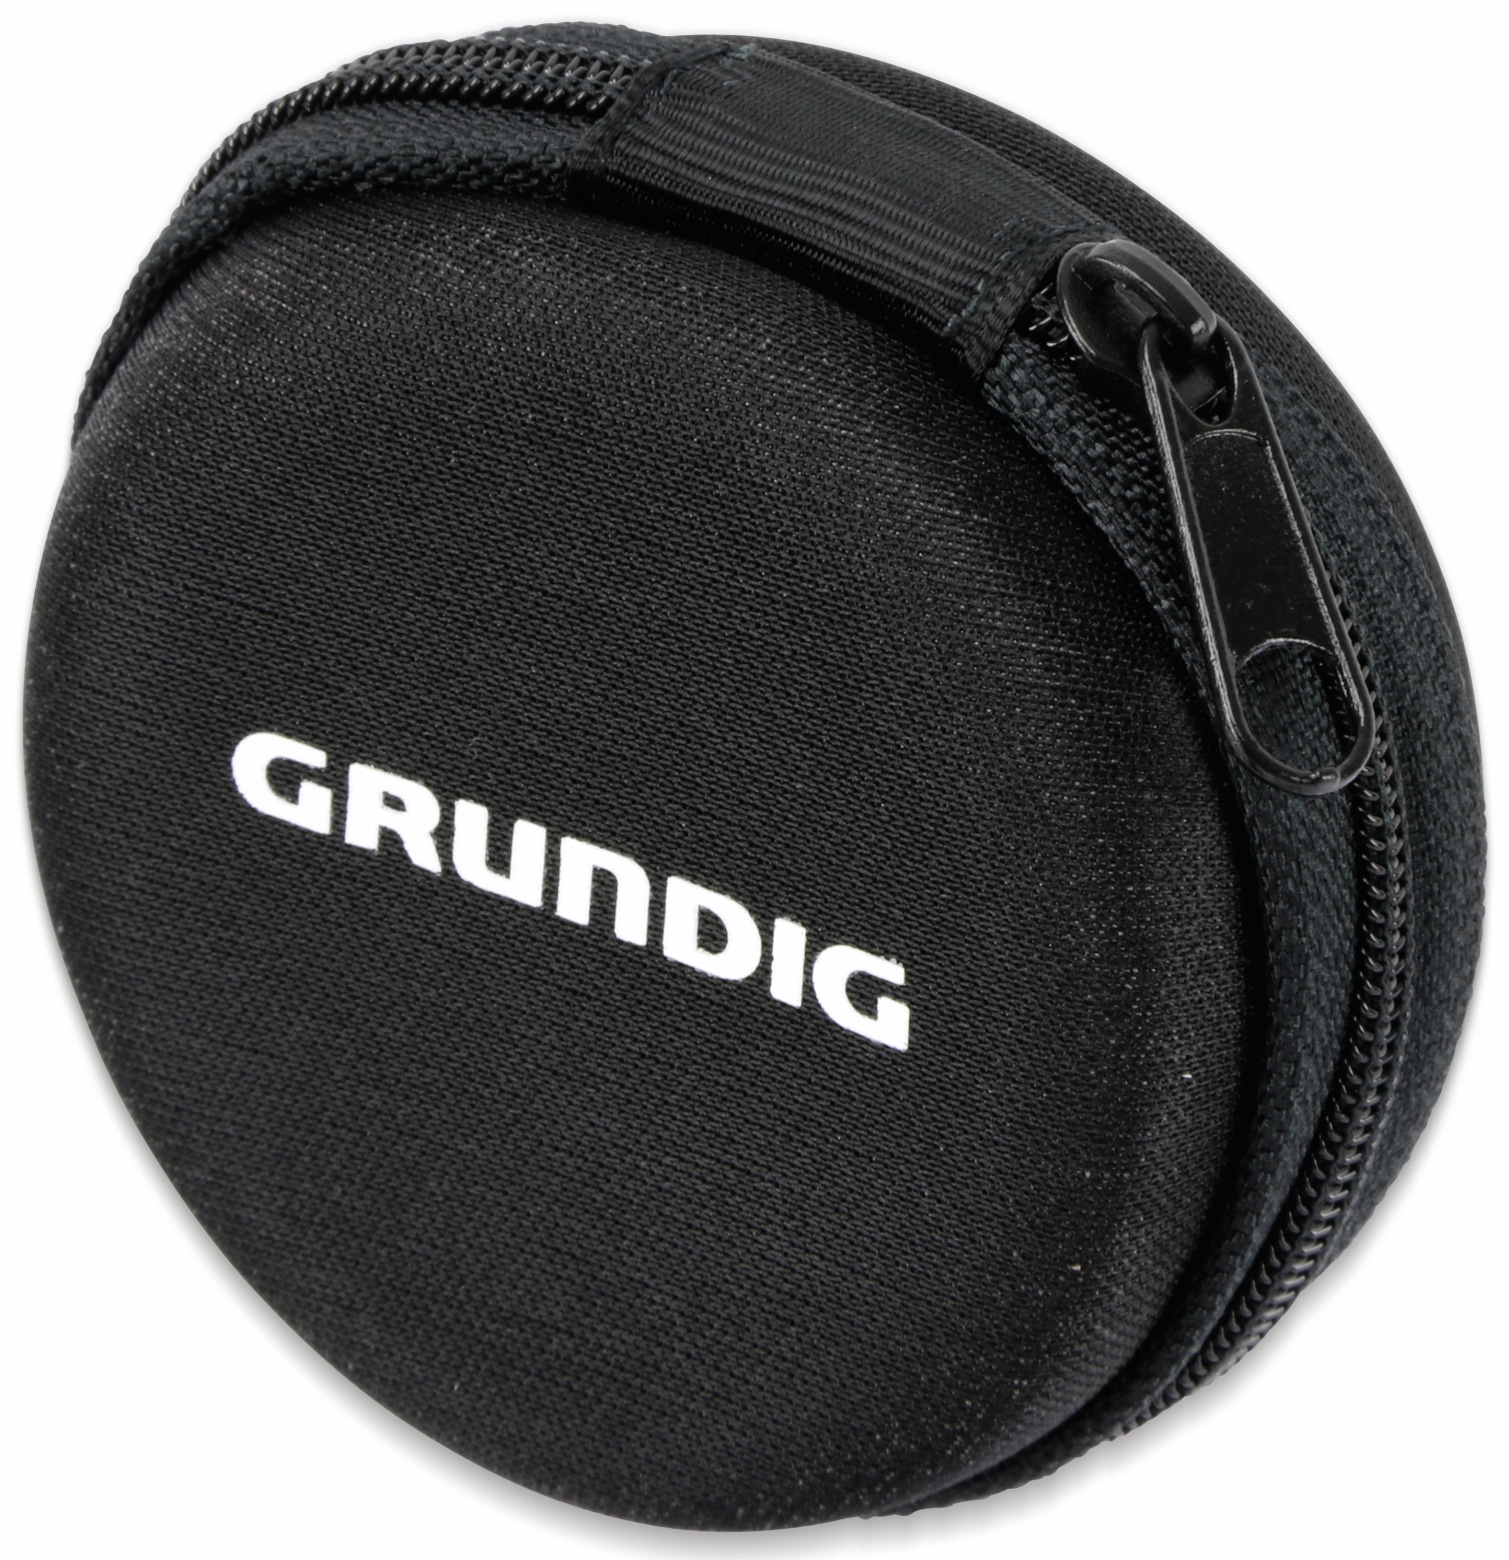 GRUNDIG In-Ear Headset mit Flachkabel 86353, gold/schwarz